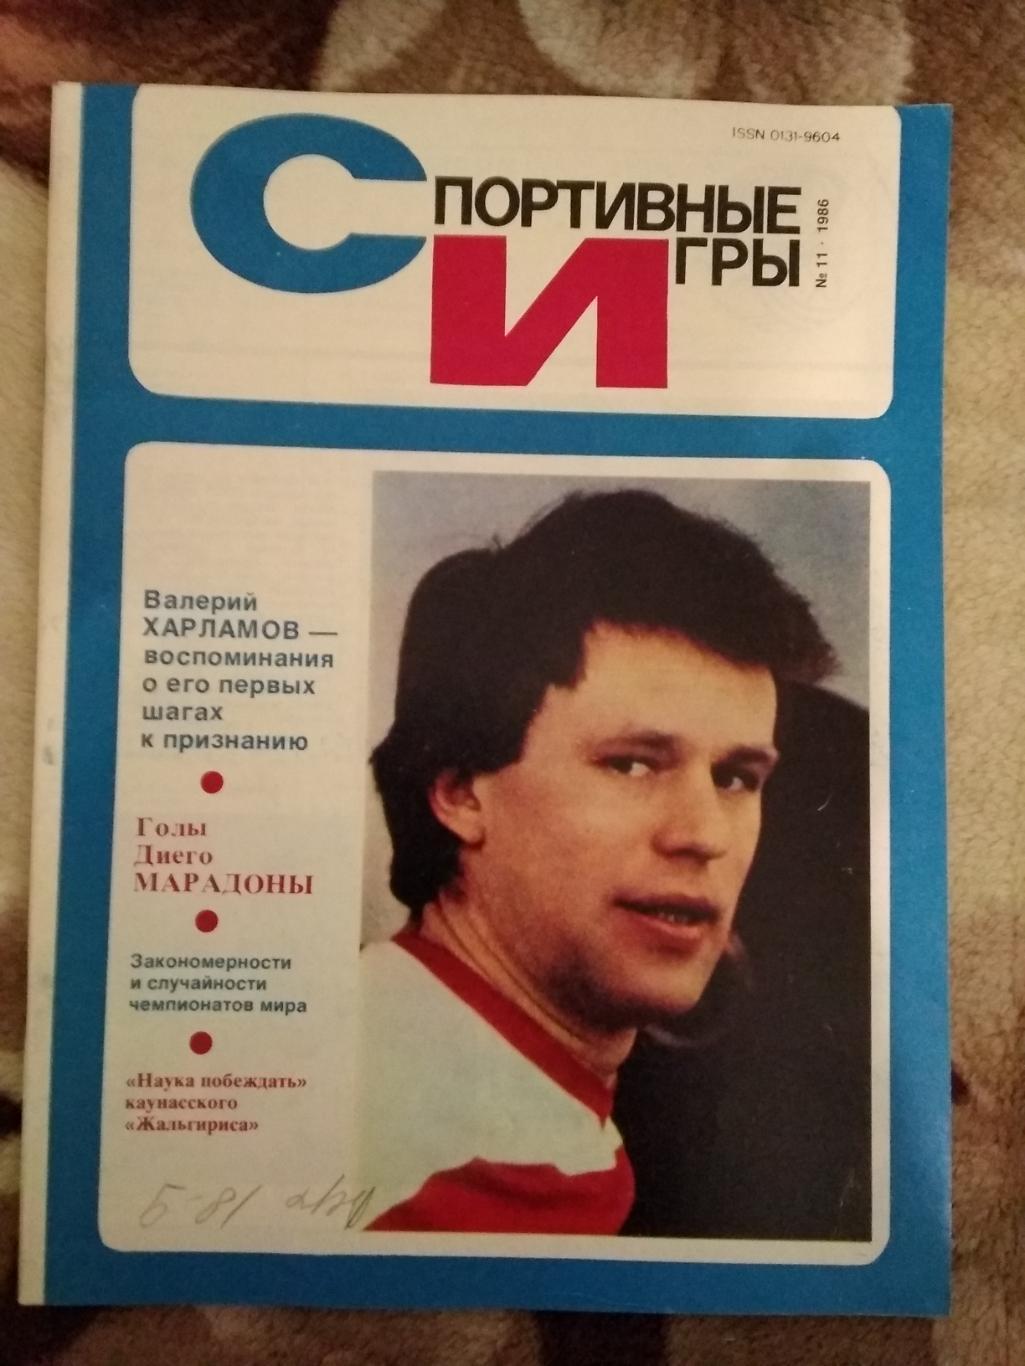 Журнал.Спортивные игры № 11 1986 г.